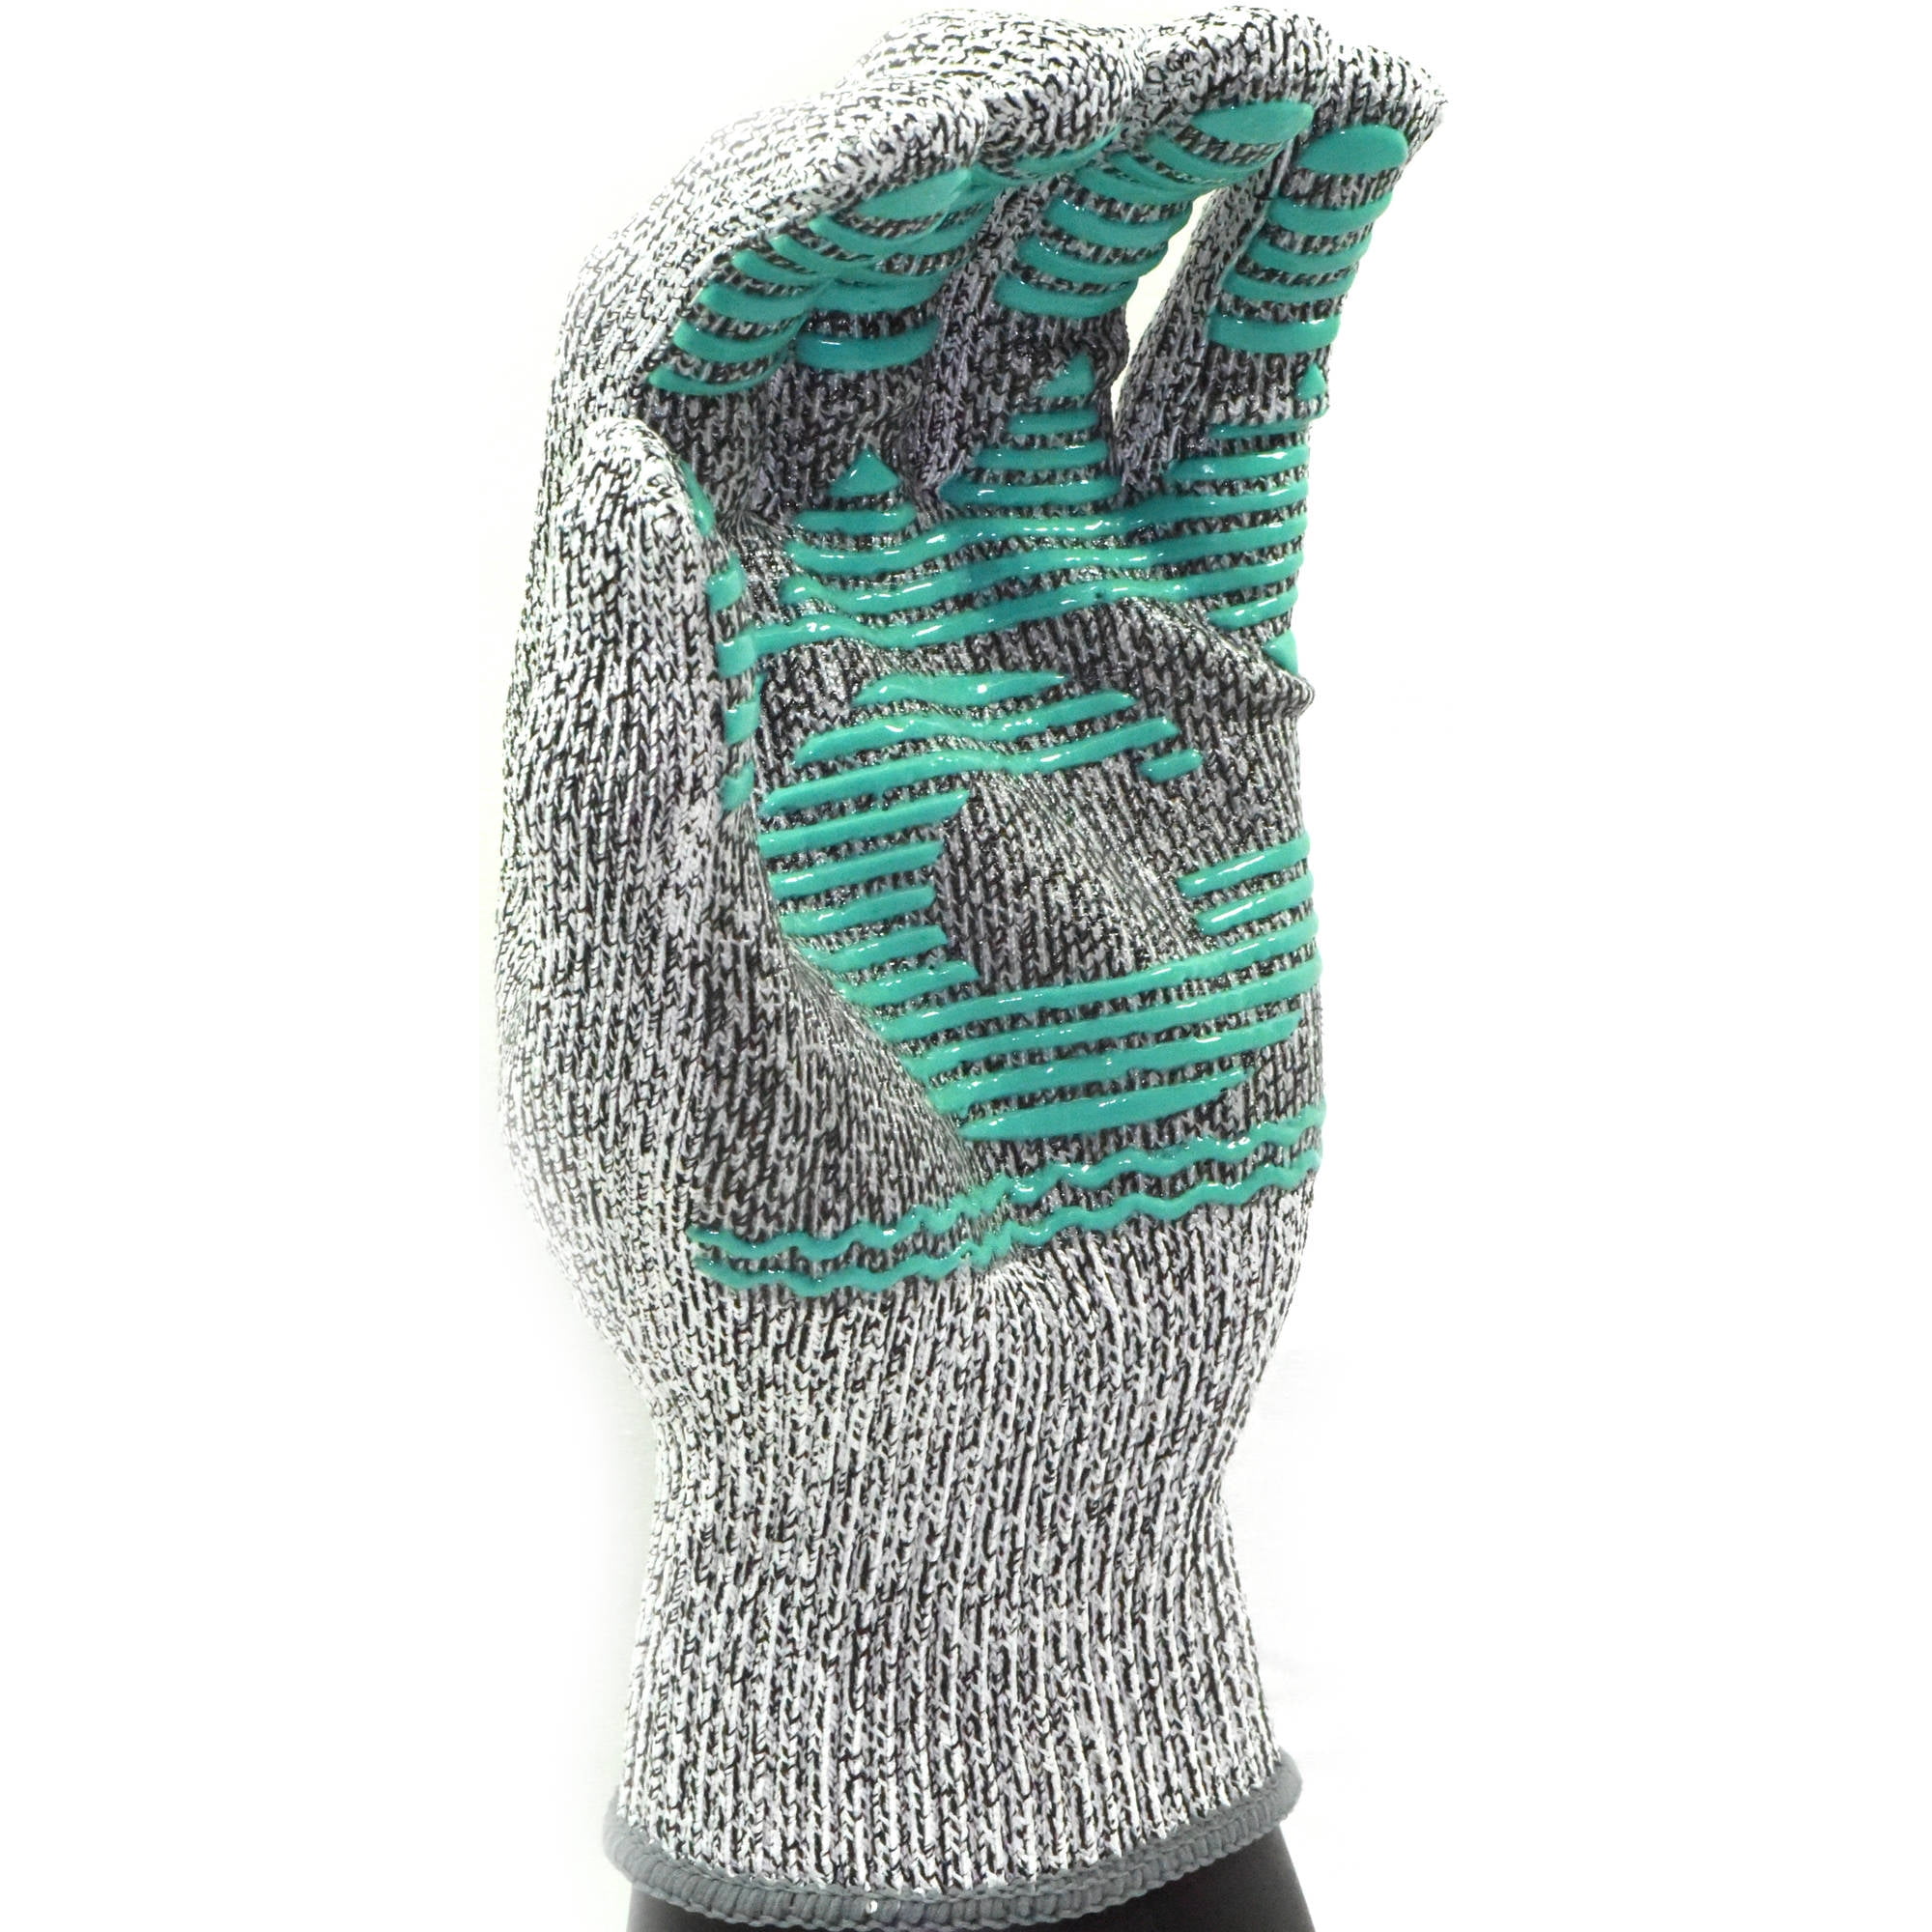 G & F 57100M CUTShield Classic level 5 Cut Resistant Gloves for  Kitchen,Food Grade Cut Resistant Gloves, Medium.,Grey